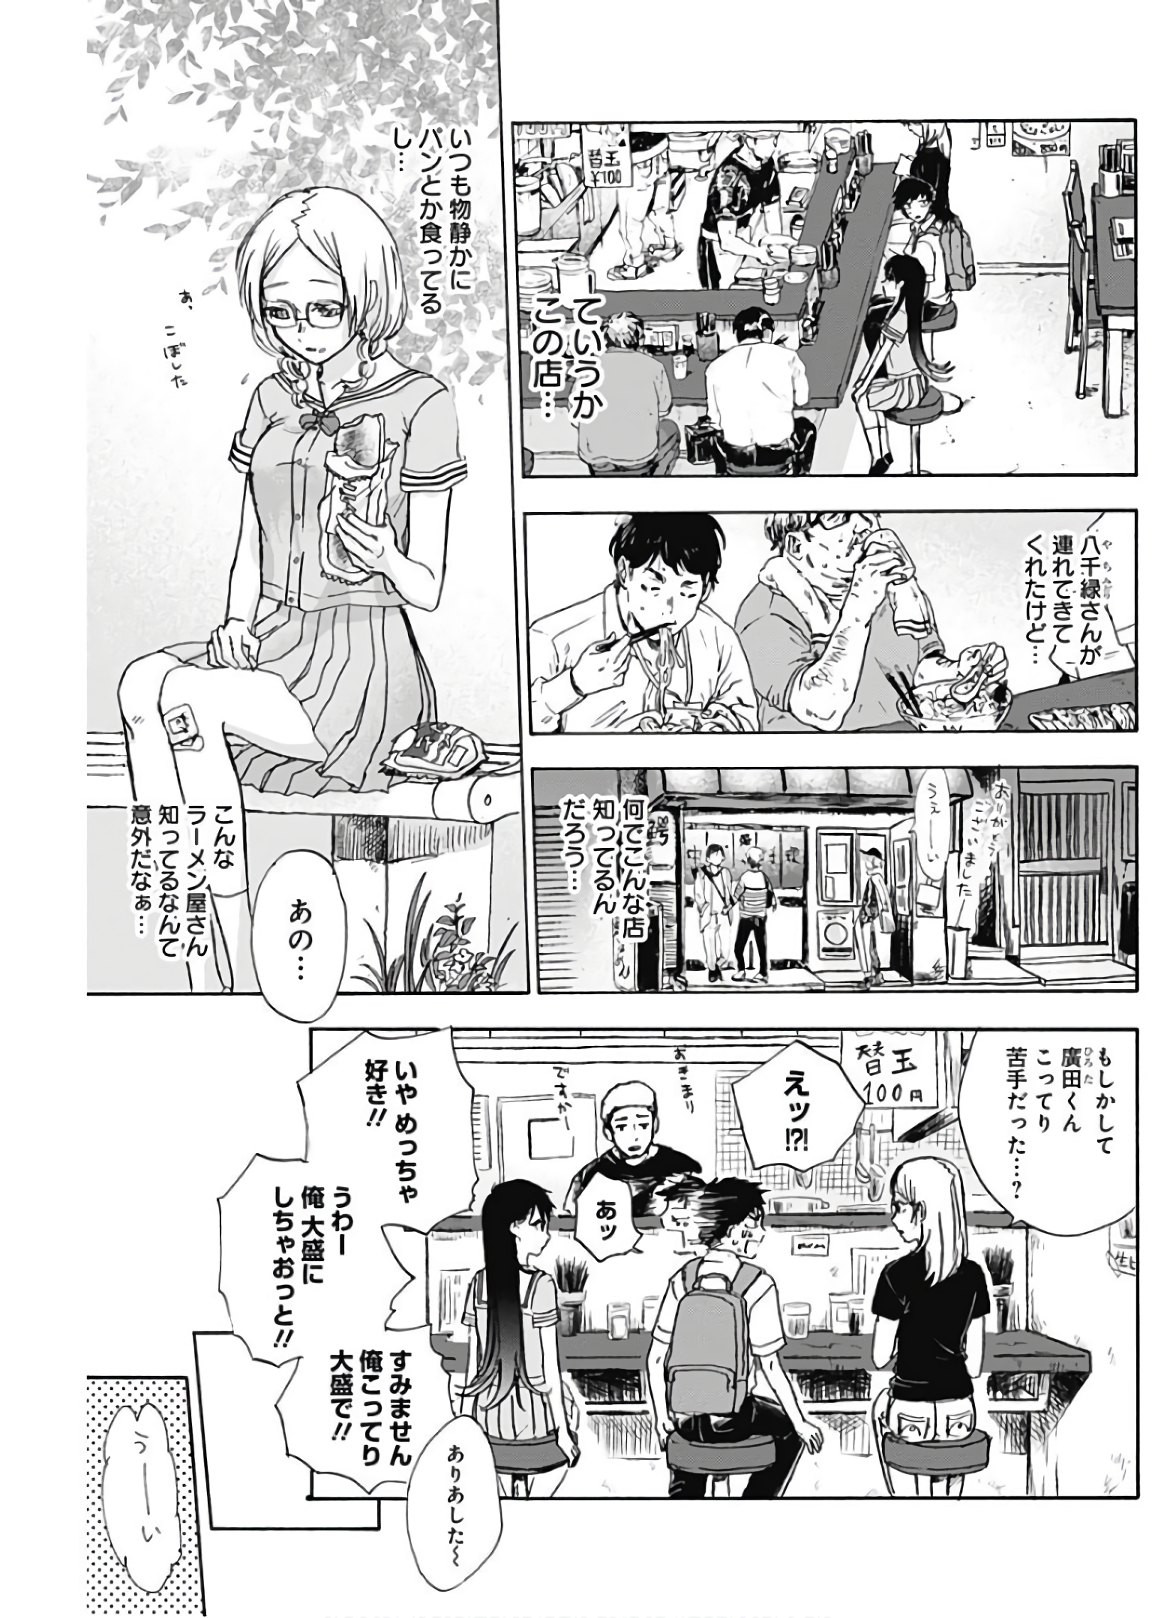 Kawaisou ni ne, Genki-kun - Chapter 007 - Page 3